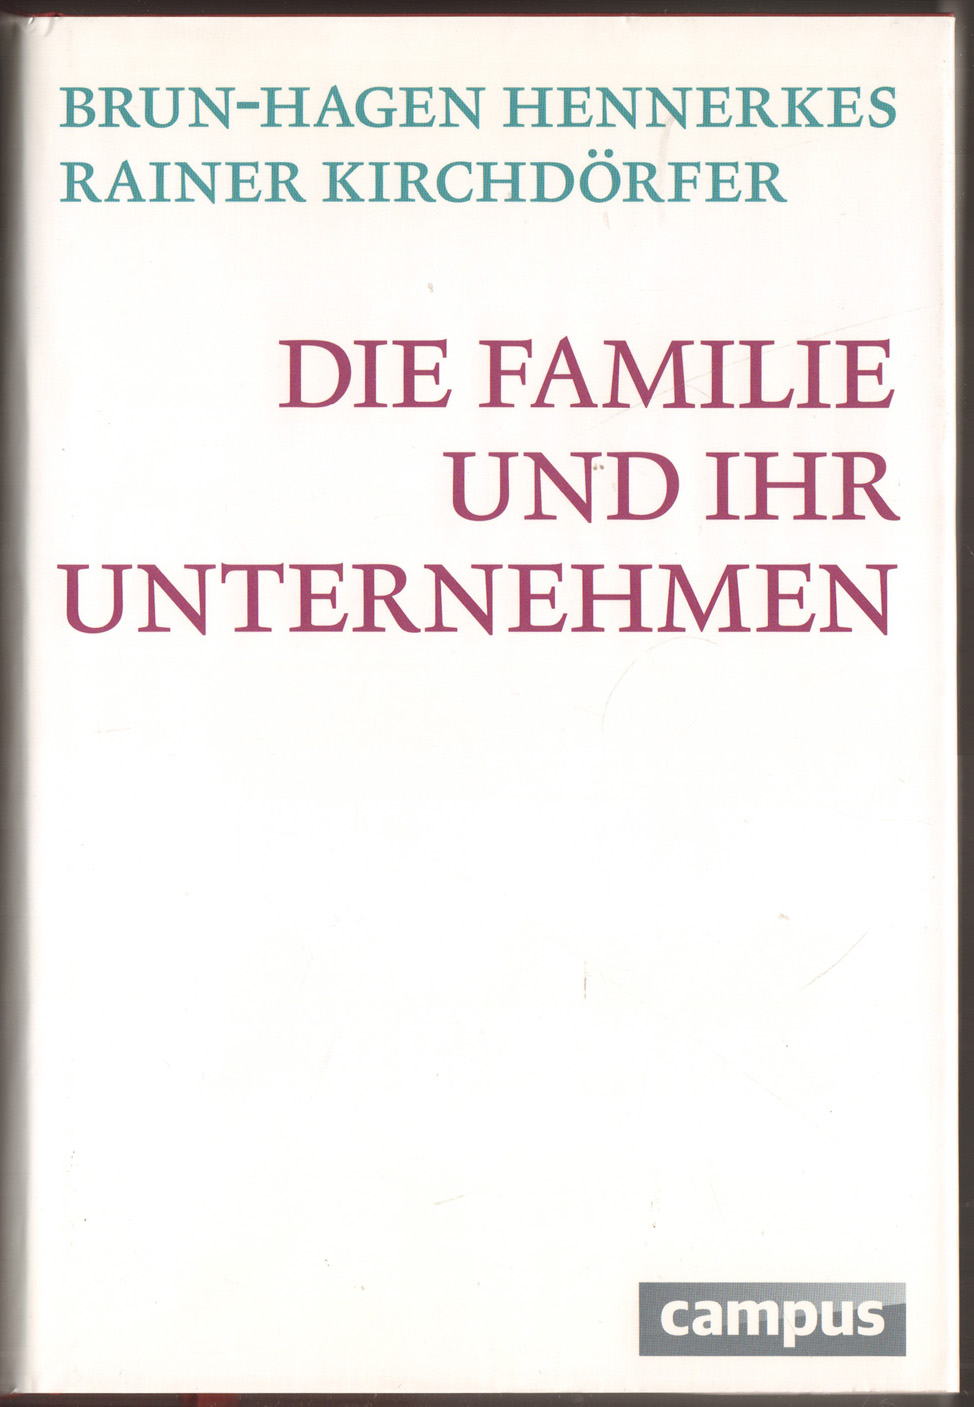 Die Familie und ihr Unternehmen. - Hennerkes, Brun-Hagen und Rainer Kirchdörfer